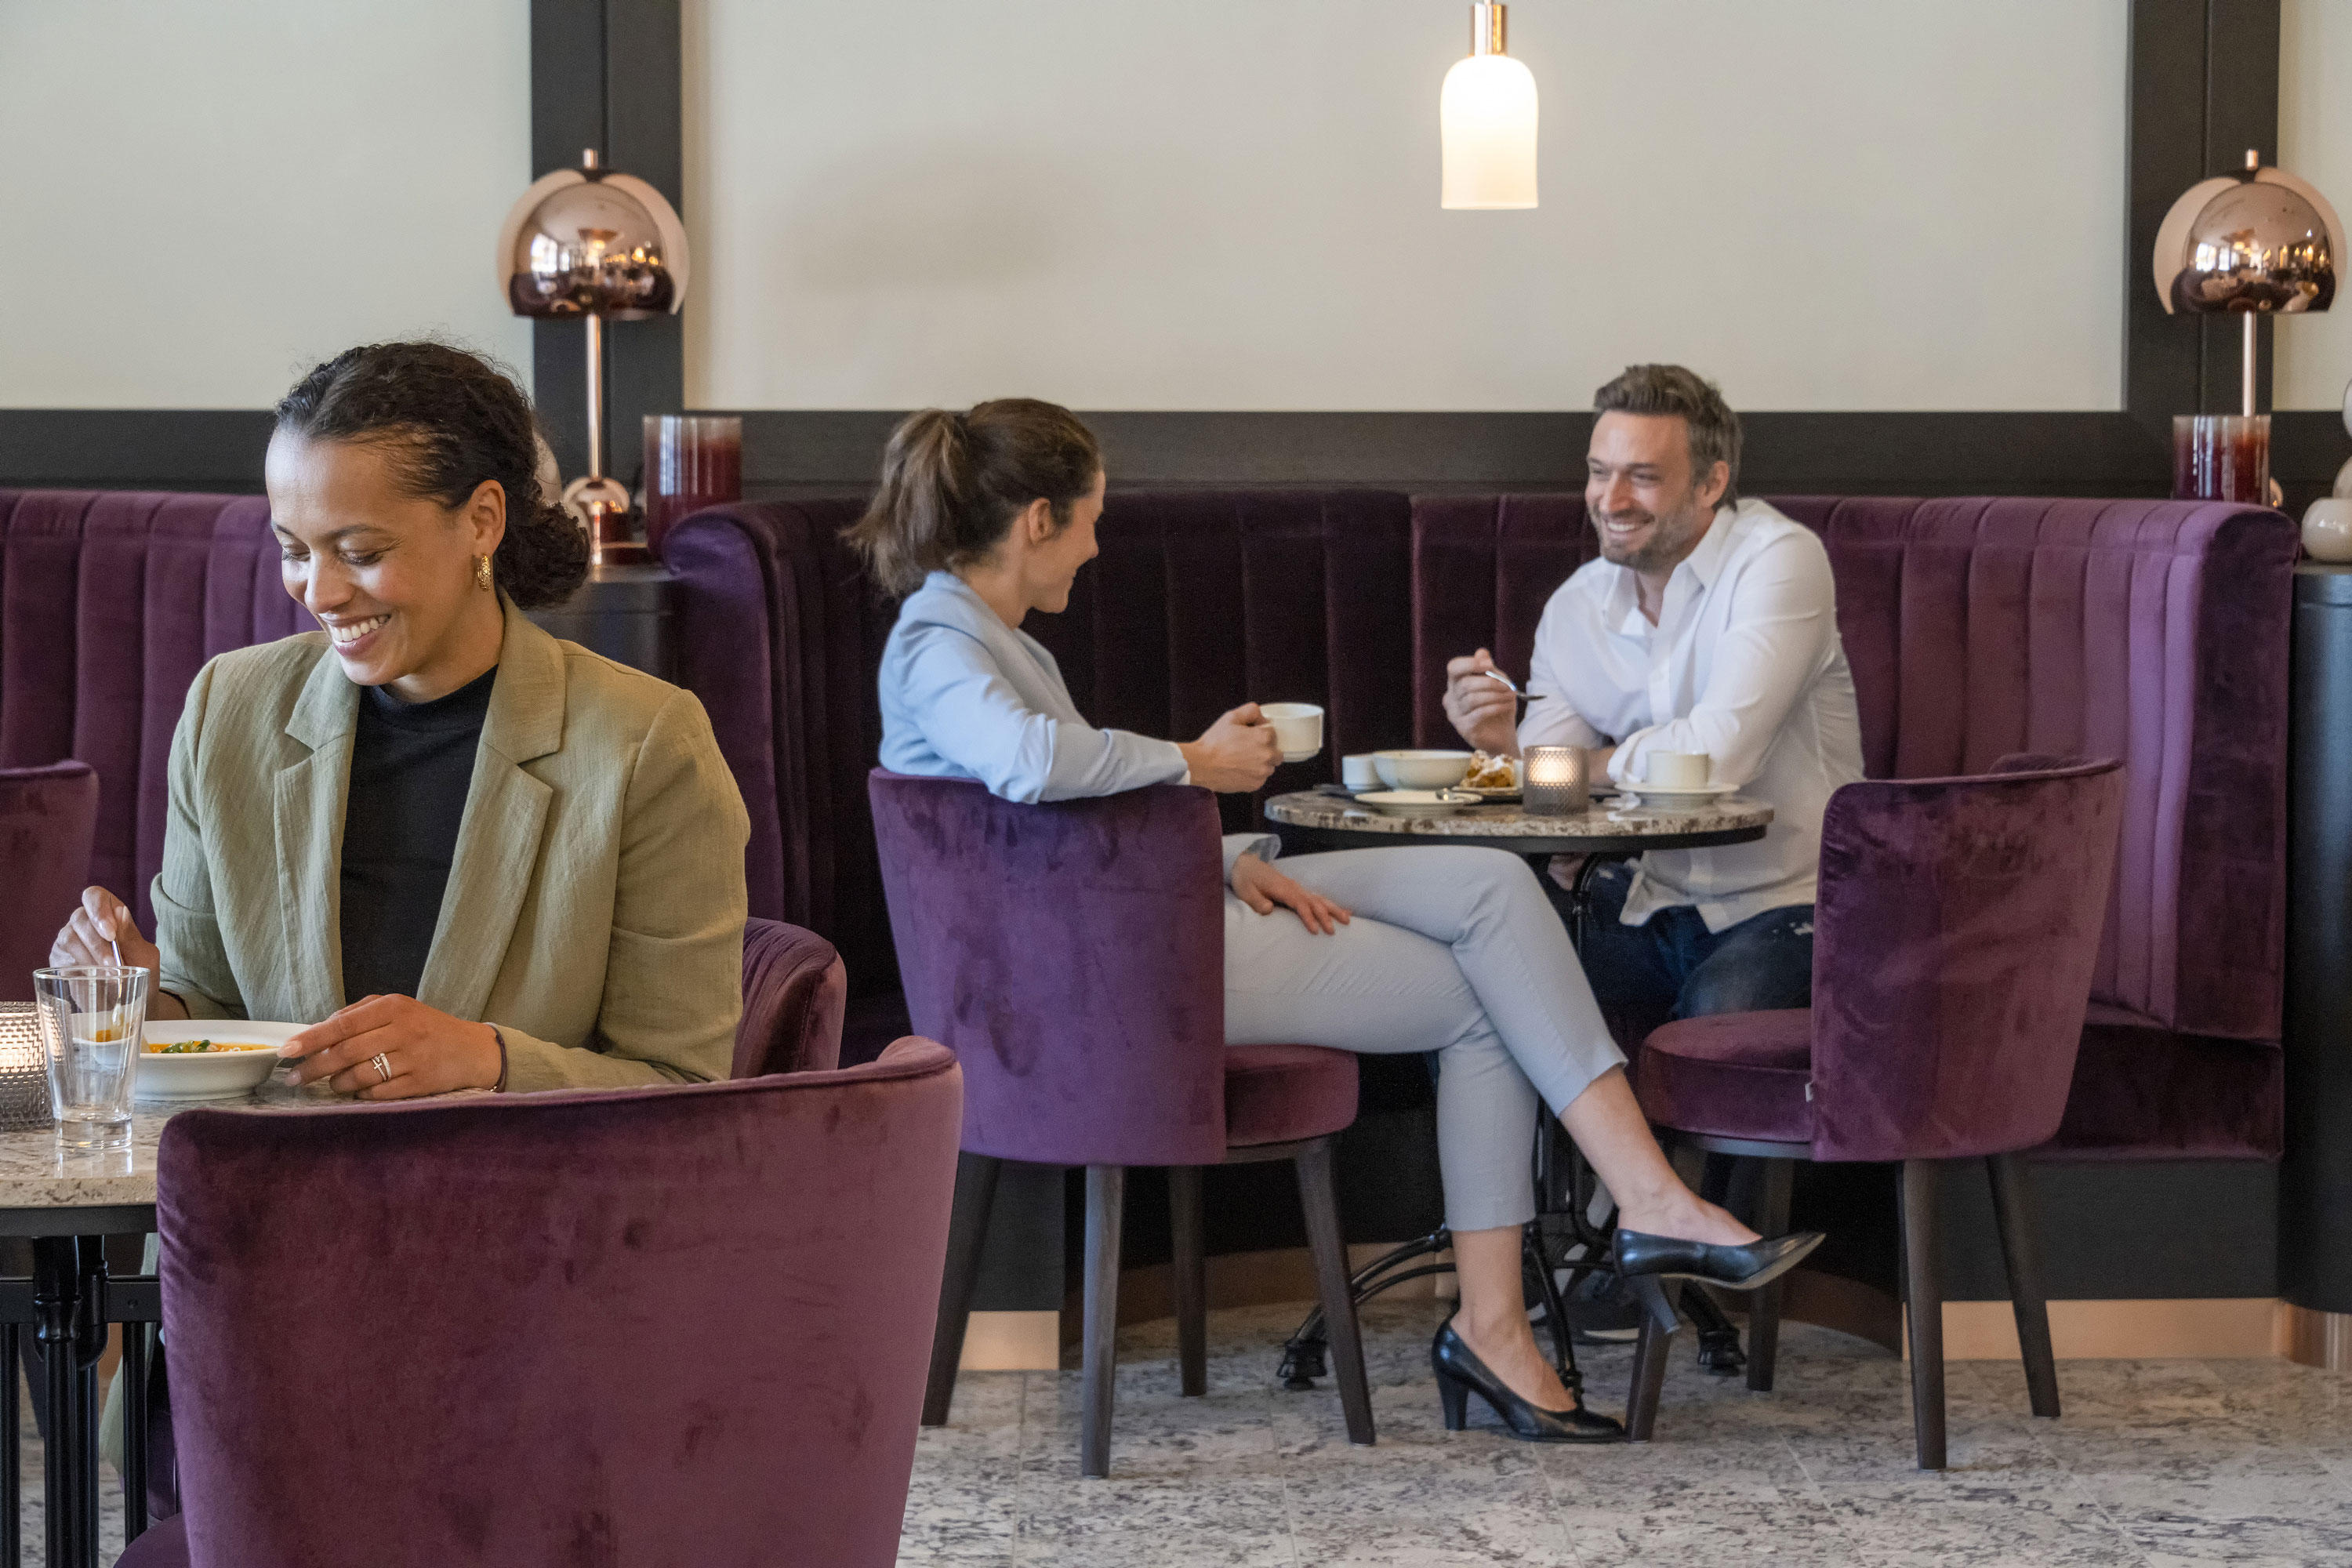 Willkommen im Café "barRista" in Ingolstadt - Genuss in französischen Flair im neu gebauten Maritim Hotel Ingolstadt